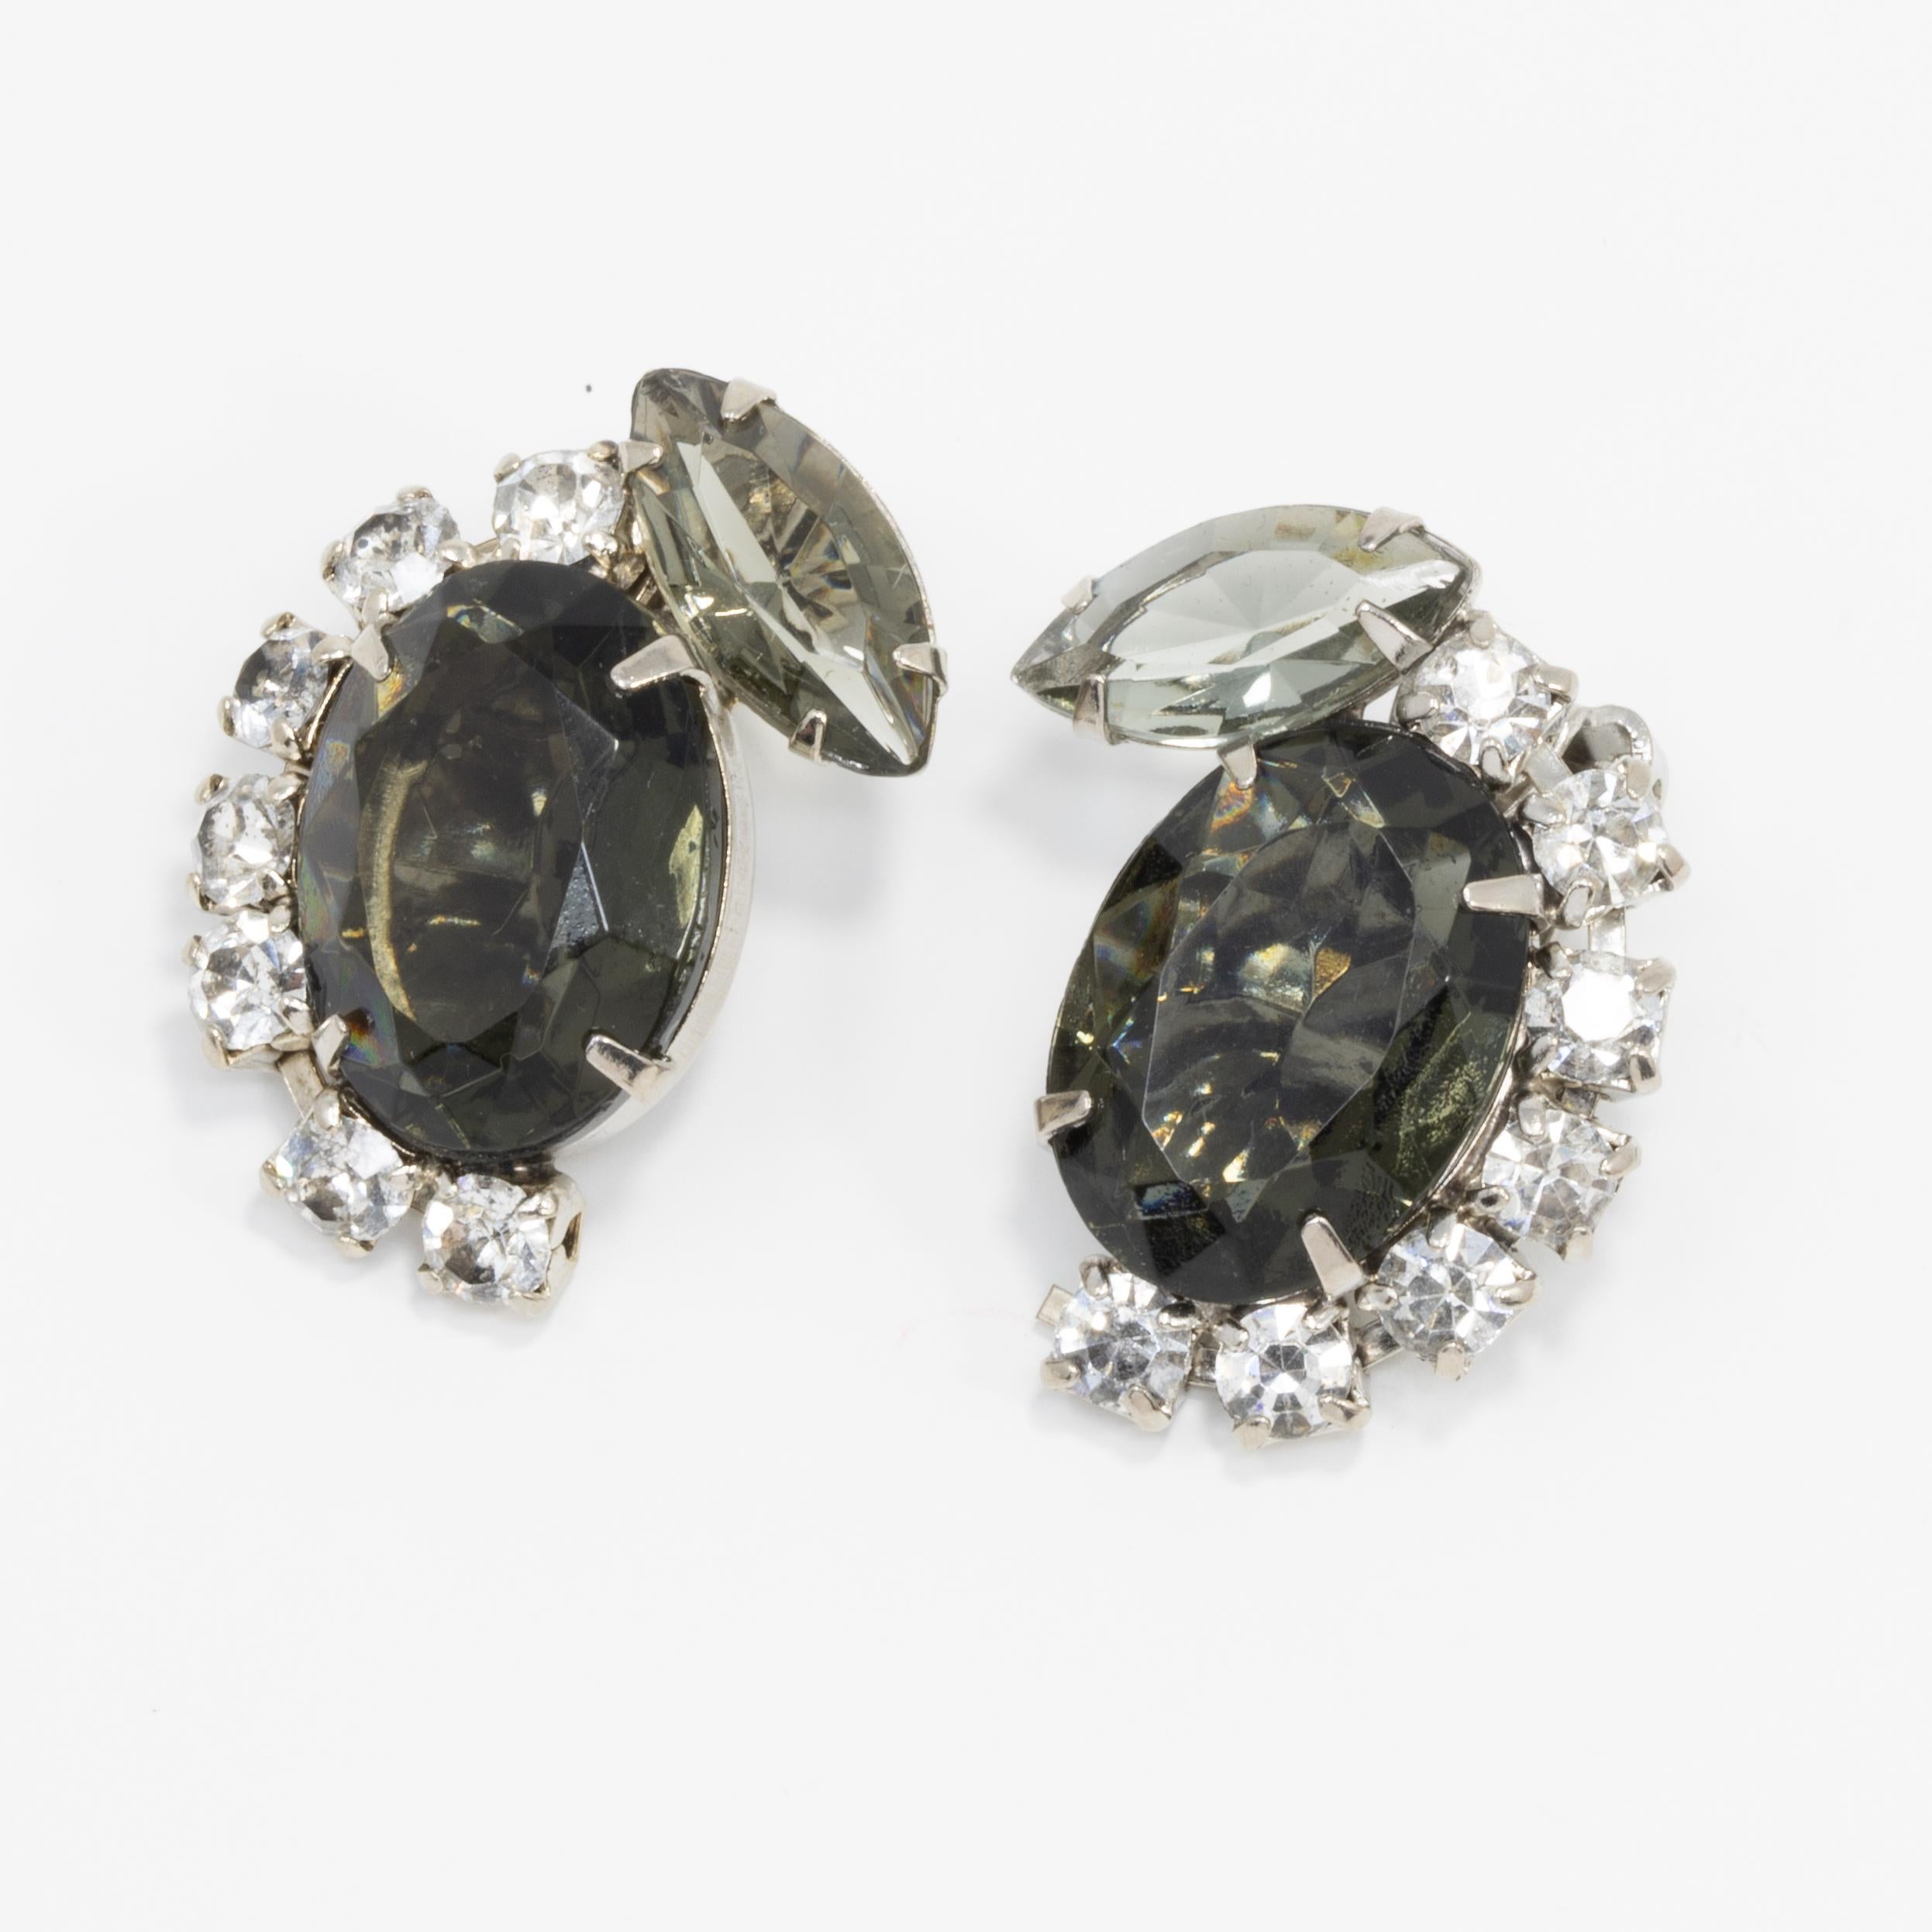 Ein Paar Retro-Clip-Ohrringe mit großen, rauchgrauen Kristallen in der Mitte, die mit klaren Kristallen in Zackenfassung akzentuiert sind. Silvertone.

Um die Mitte des 19. Jahrhunderts.